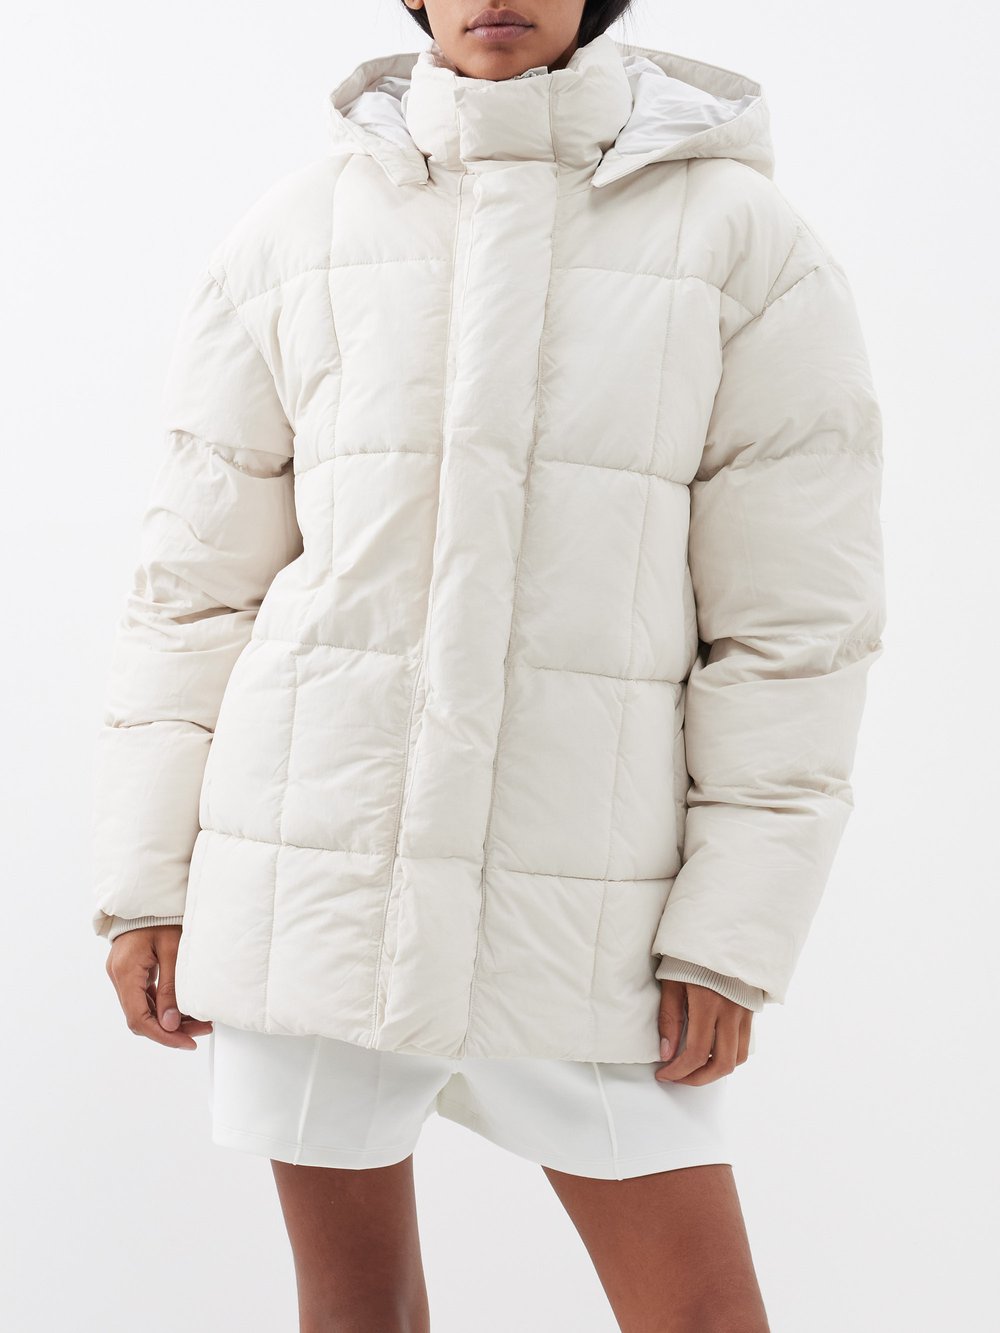 Утепленное пальто richmond из переработанного волокна. Alex Eagle Sporting Club, белый пальто стеганое со съемным капюшоном модель бельвитессе wellensteyn черный